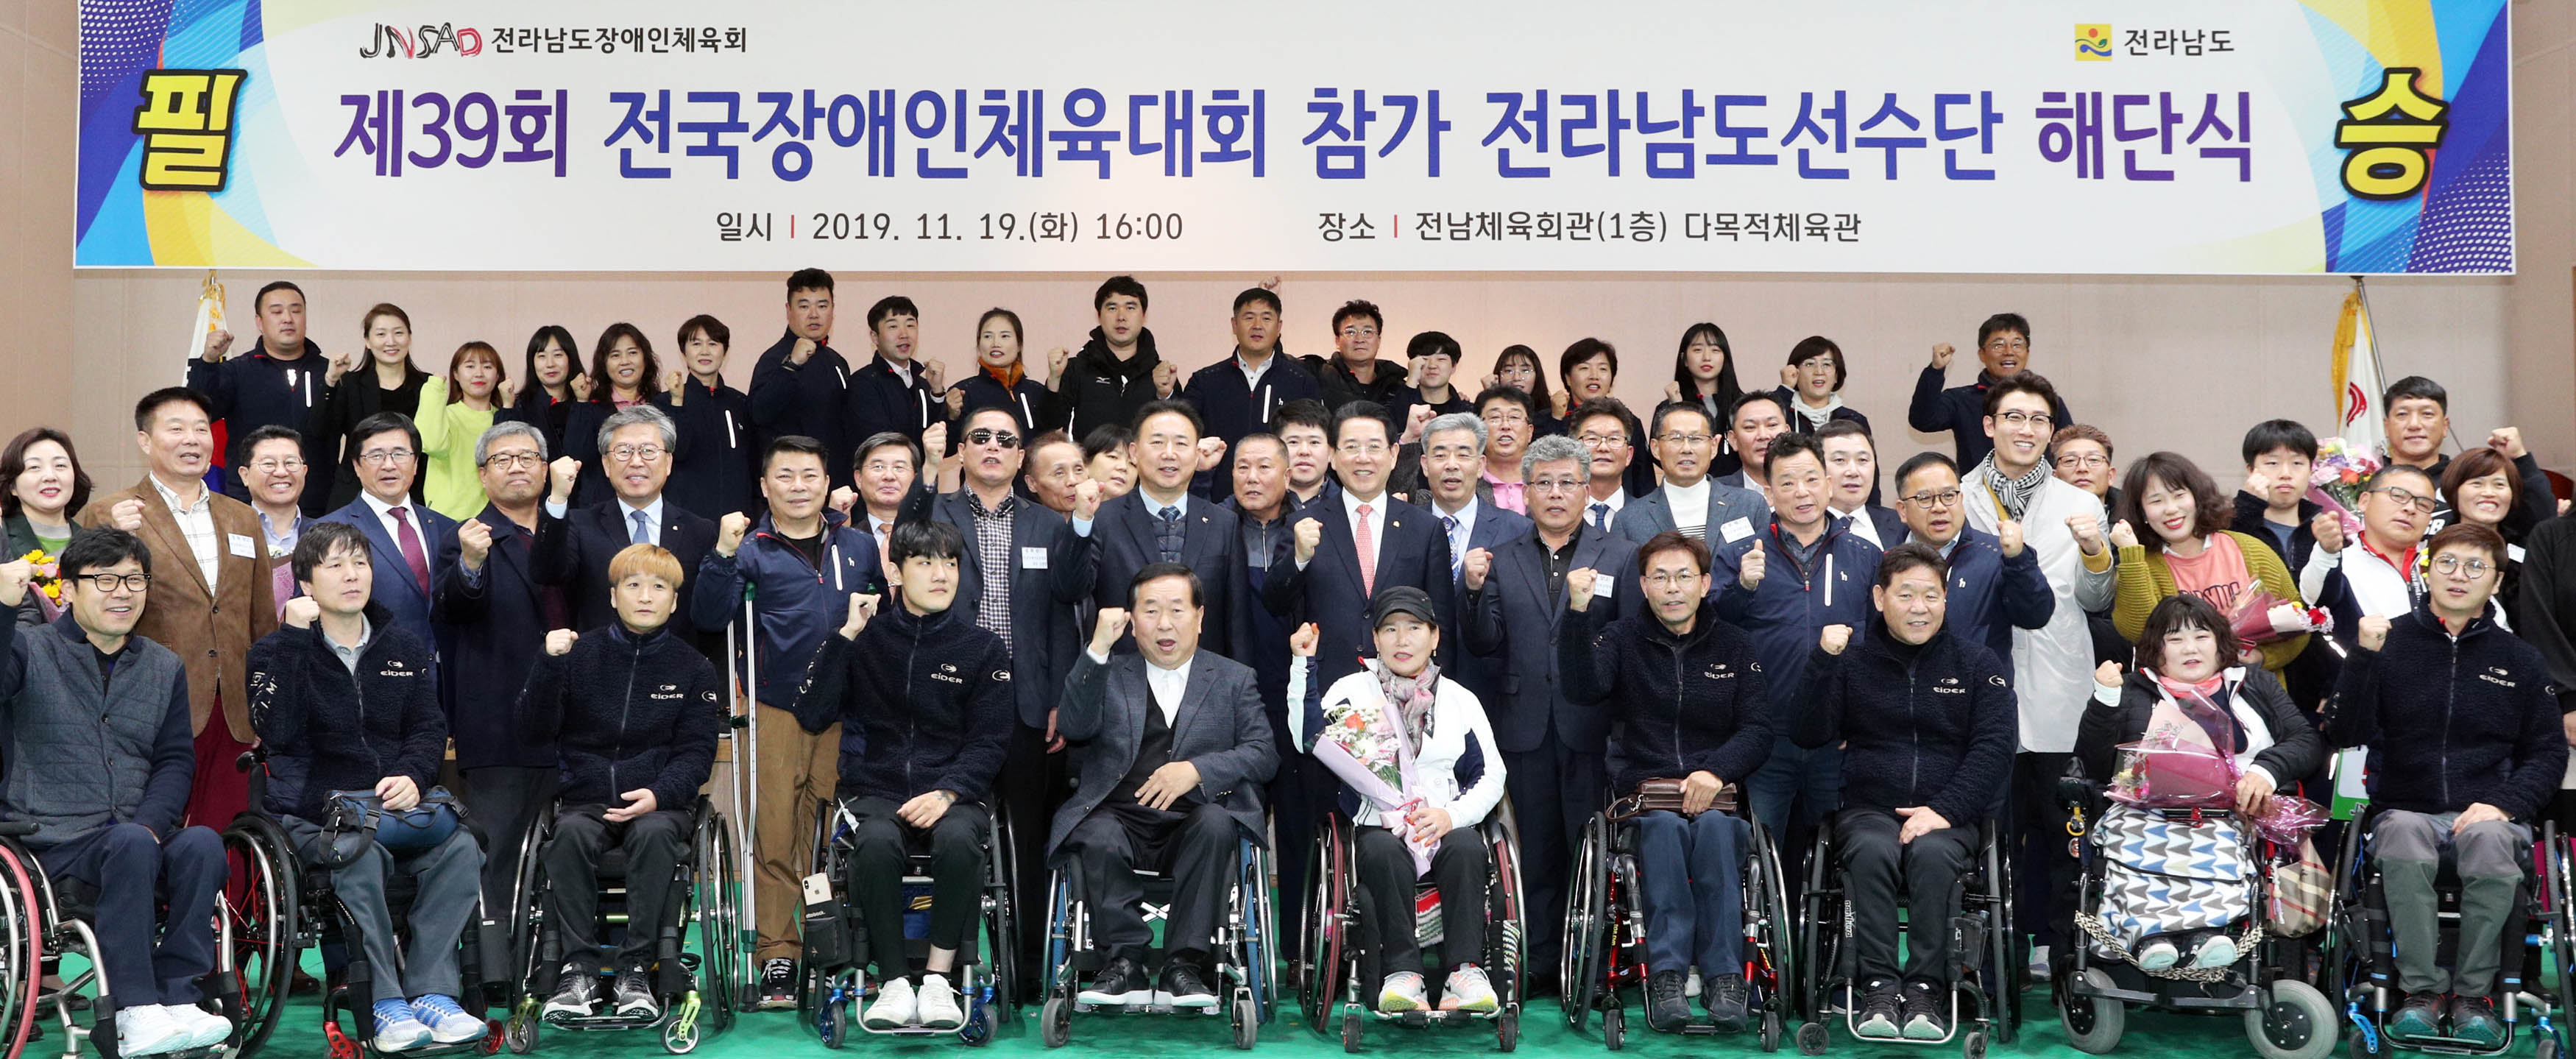 제39회 전국장애인체육대회 참가 전라남도선수단 해단식1